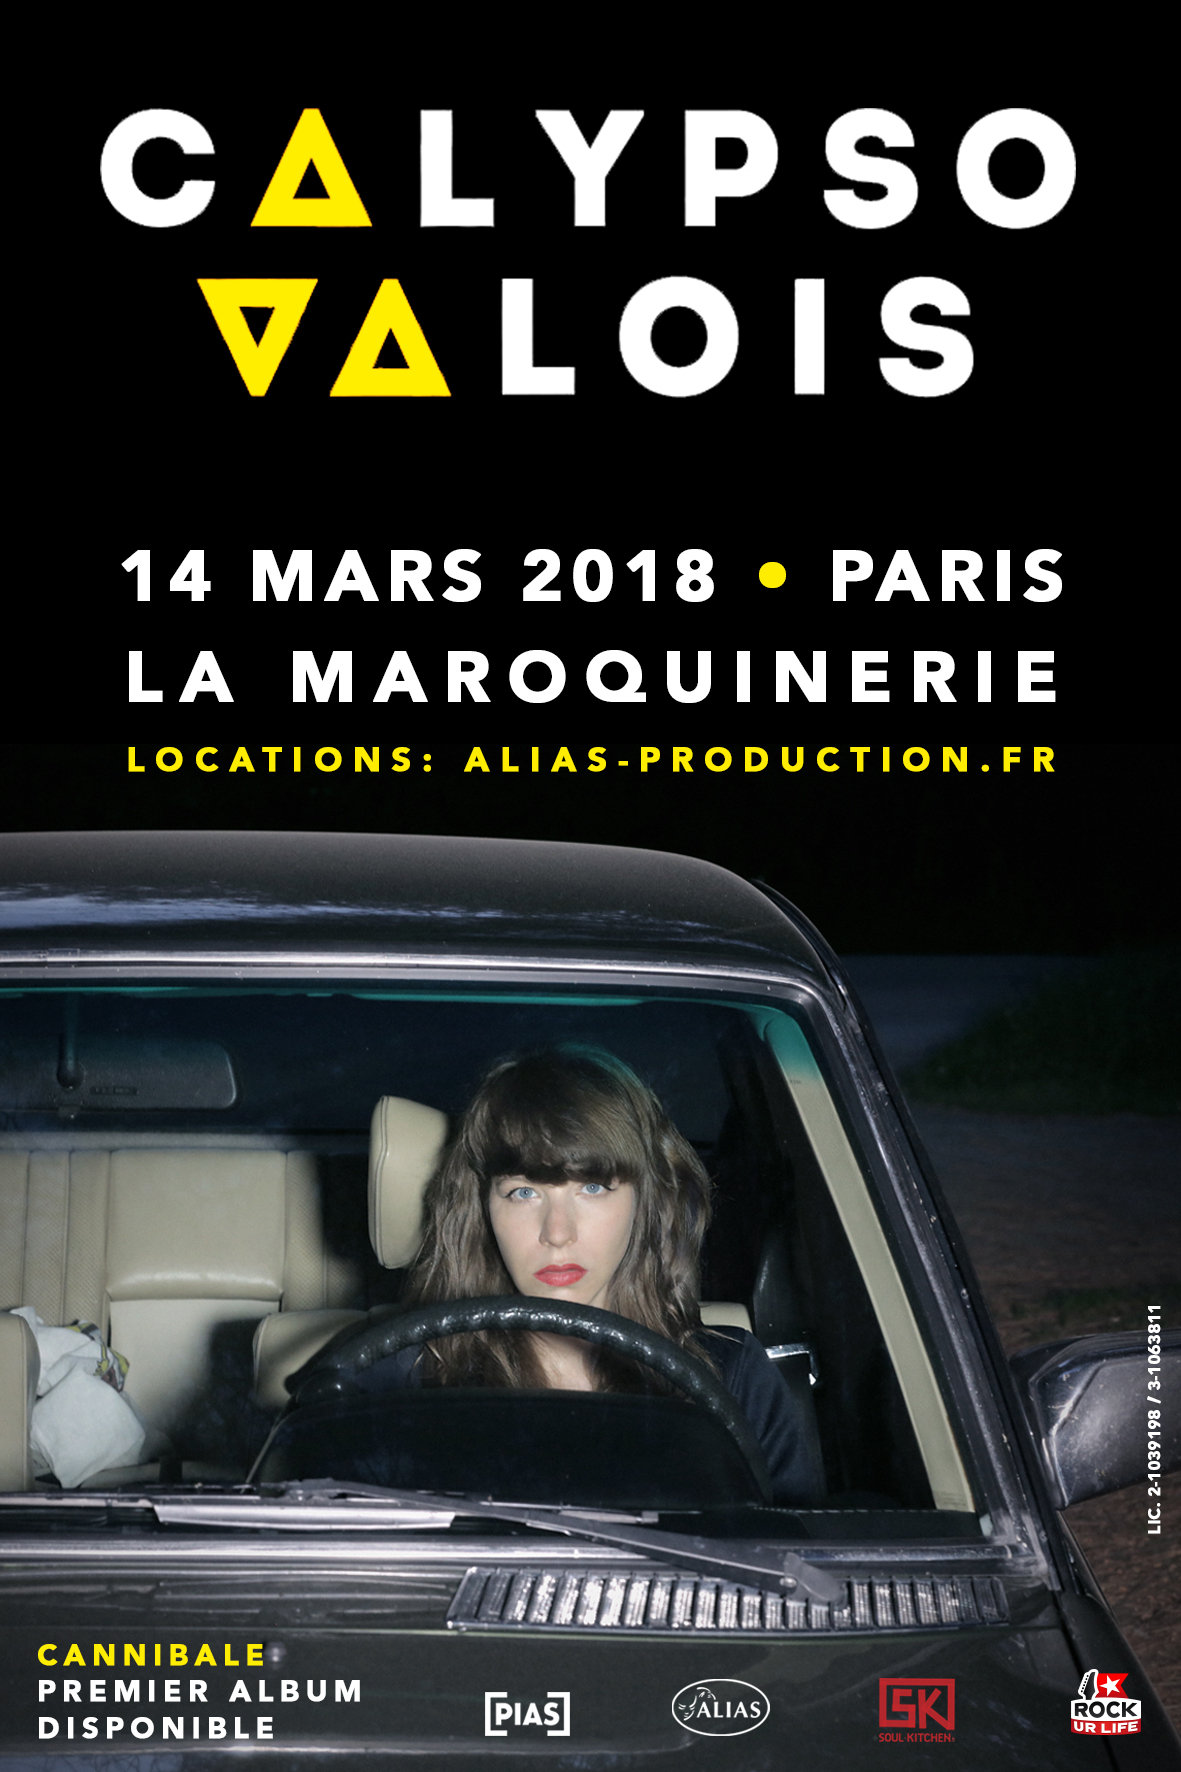 CALYPSO VALOIS CONCOURS : Gagnez 2×2 places pour le concert de Calypso Valois à Paris !